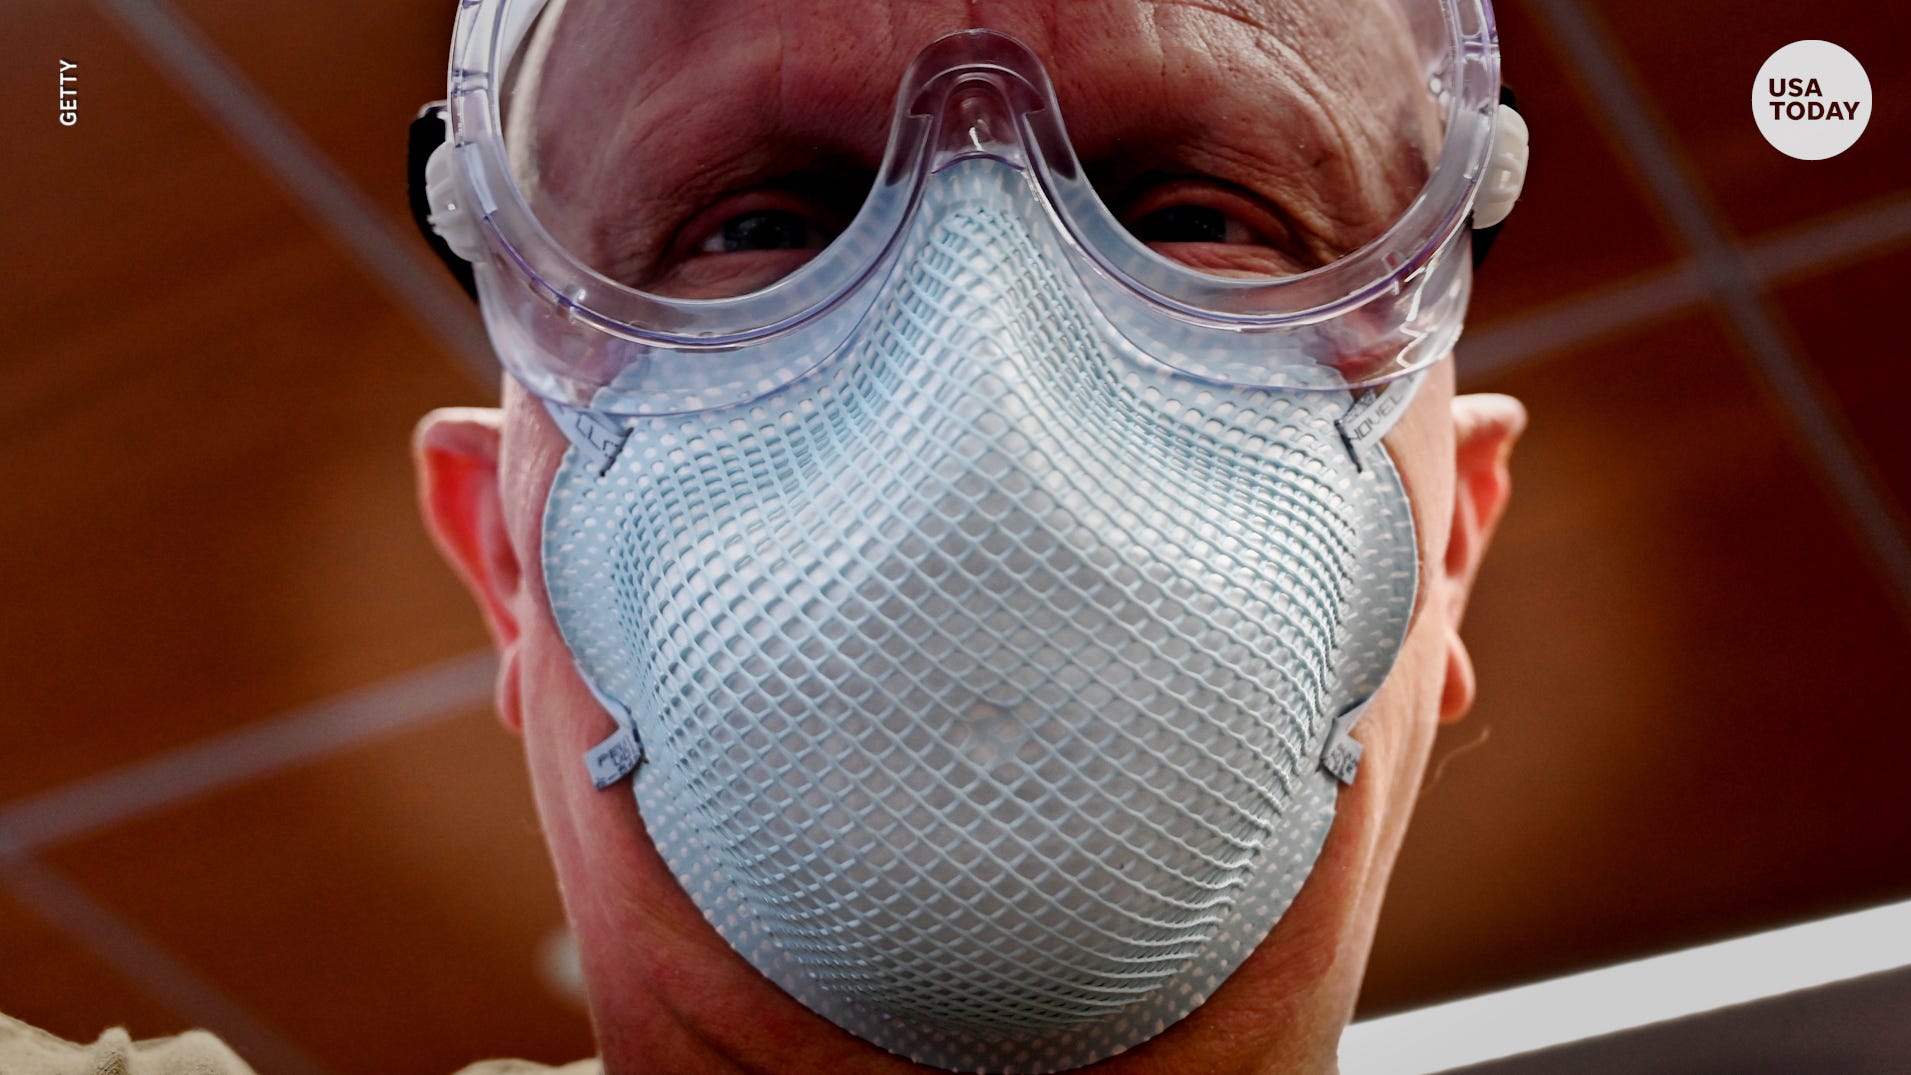 Texas AG's office halts auction for 750,000 face masks